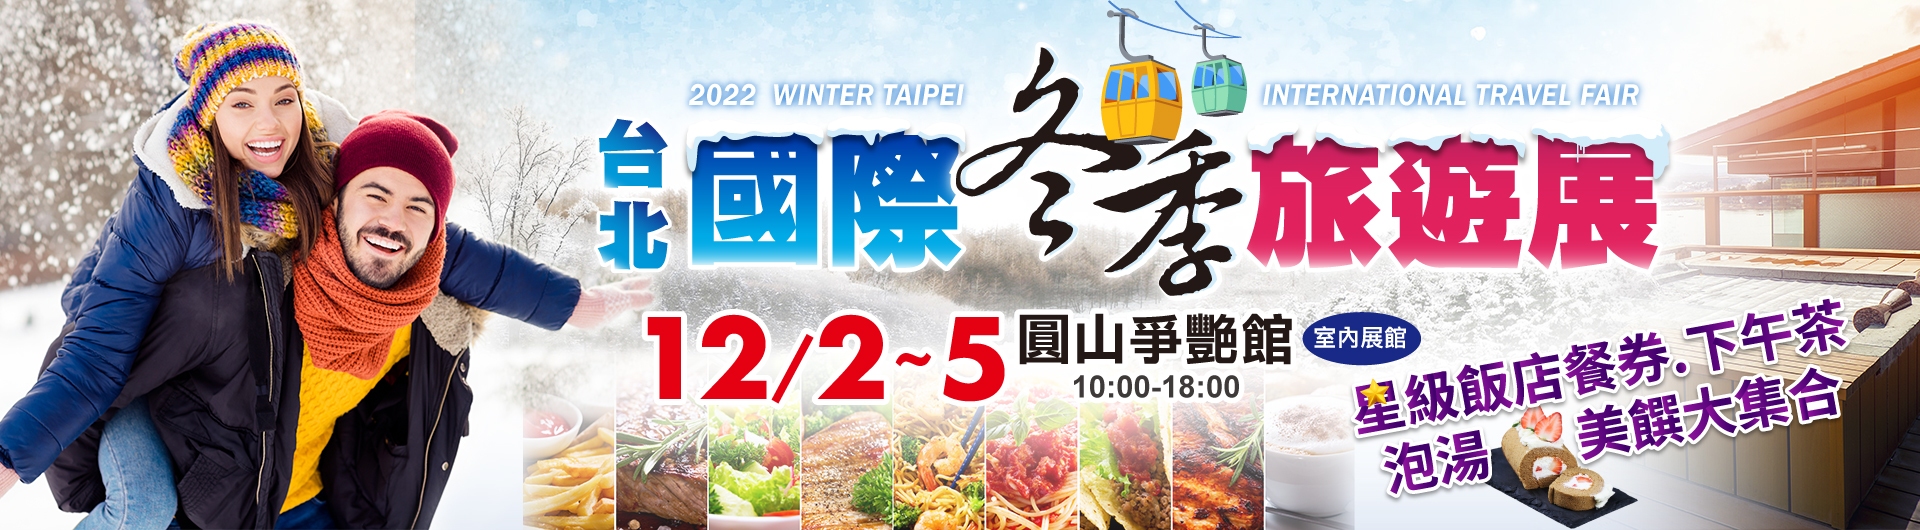 承興-冬季旅遊